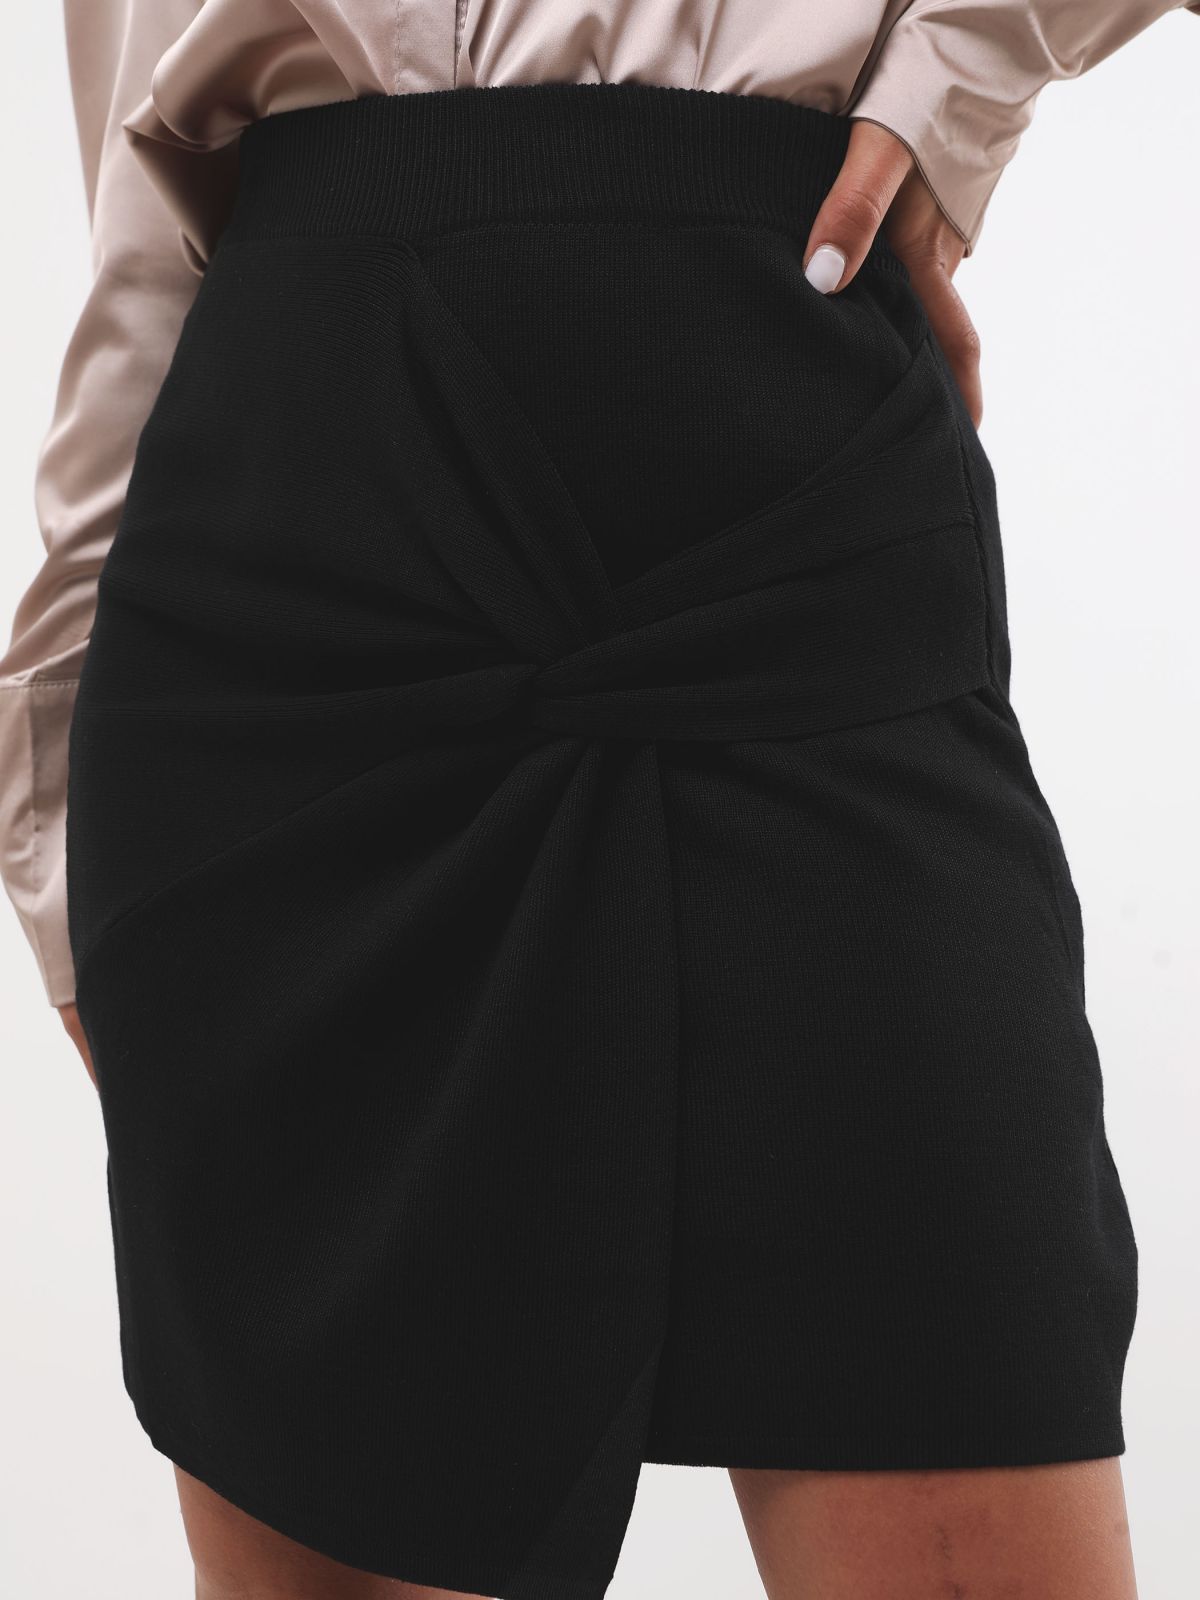  חצאית מיני סריג עם טוויסט של TERMINAL X